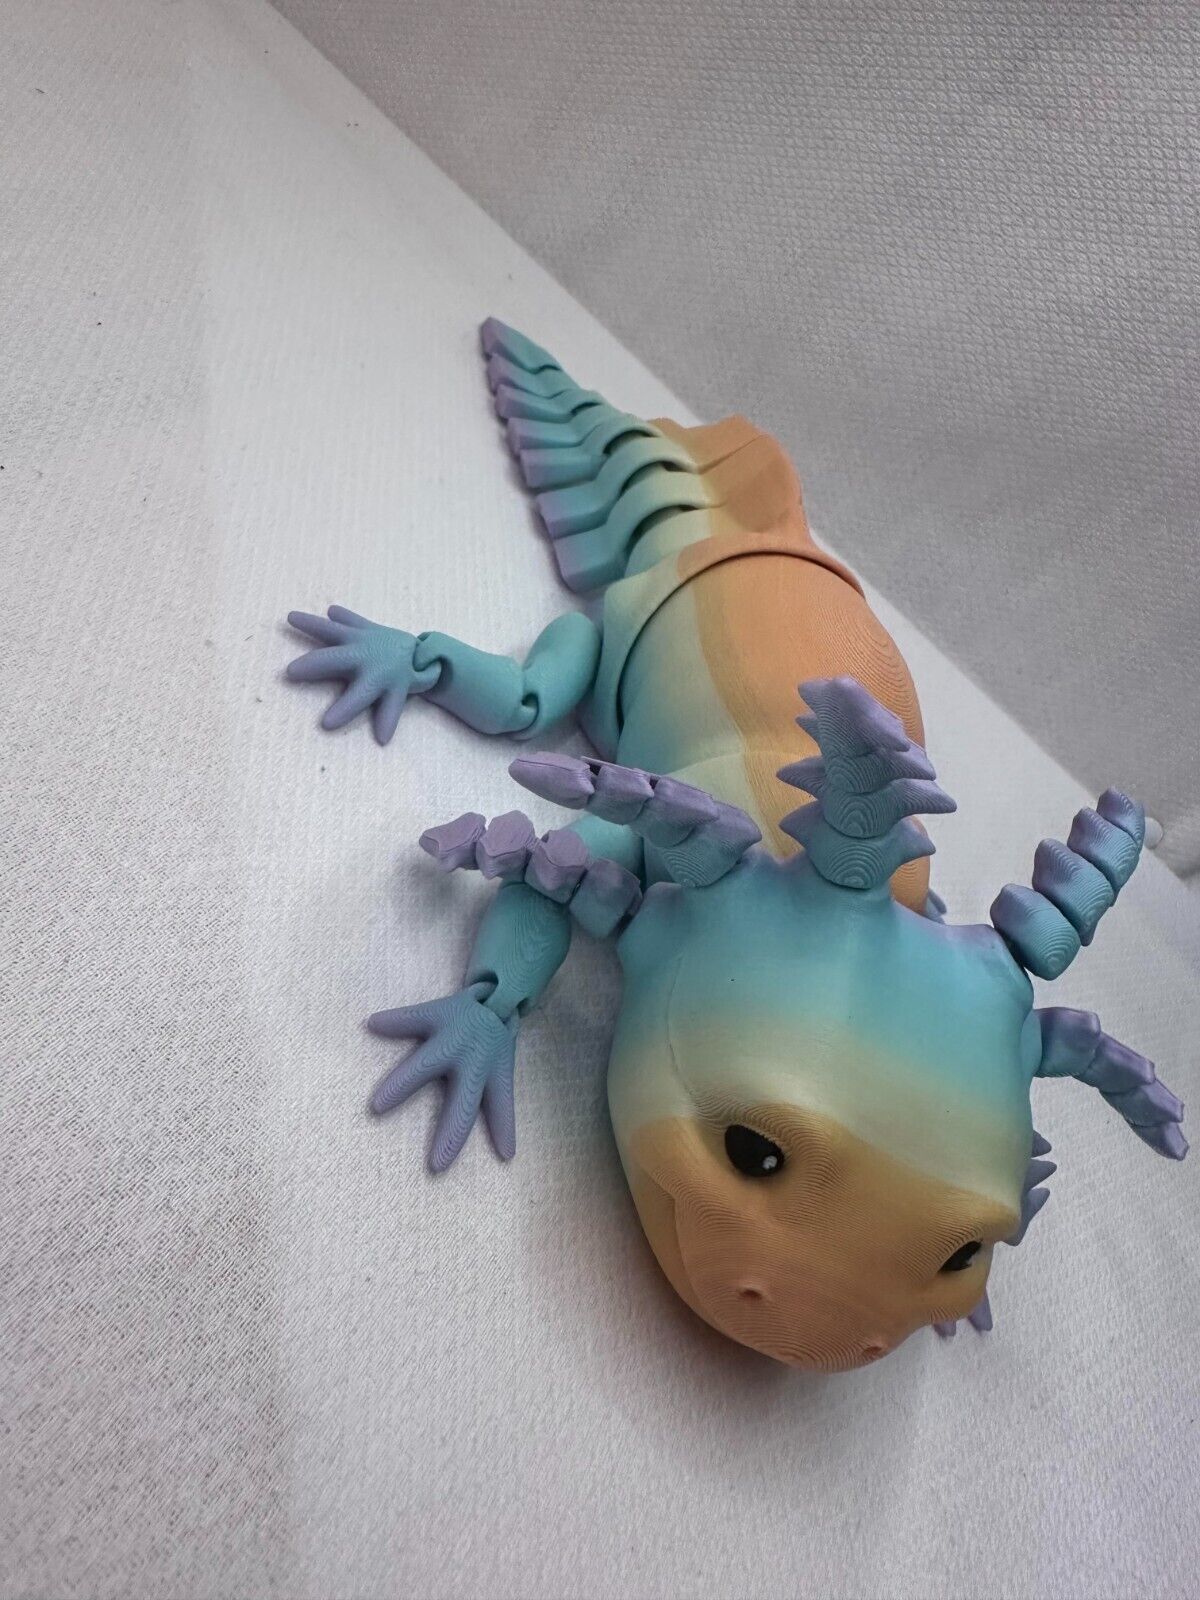 Articulating Axolotl 3D Printed Fidget